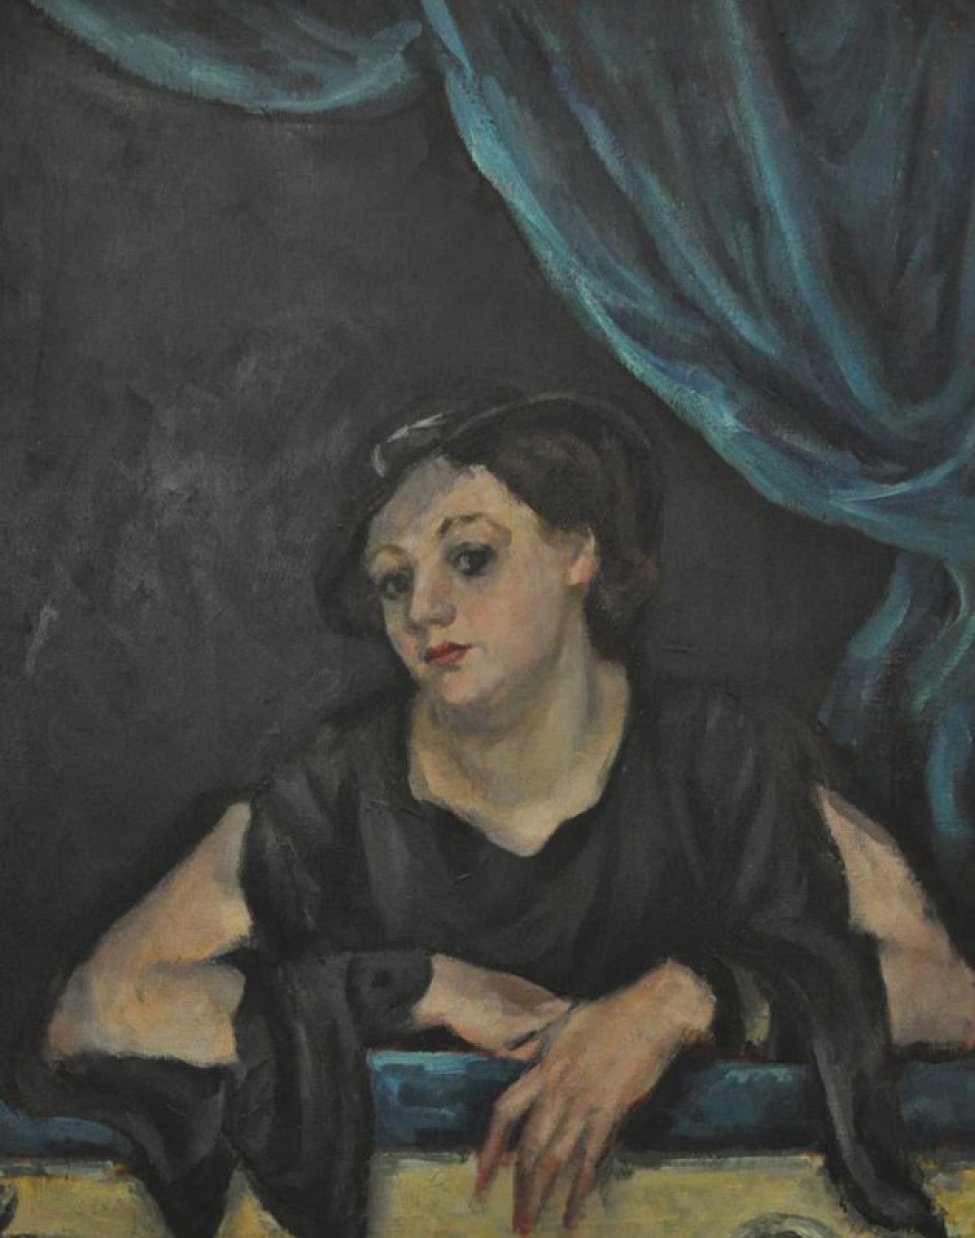 Погрудное изображение молодой темноглазой женщины в шлпяпке, сидящей в ложе. Поворот головы в 3/4 влево. Обнаженные руки положены на голубой бархат барьера ложи. Справа яркая зеленовато-синяя драпировка.